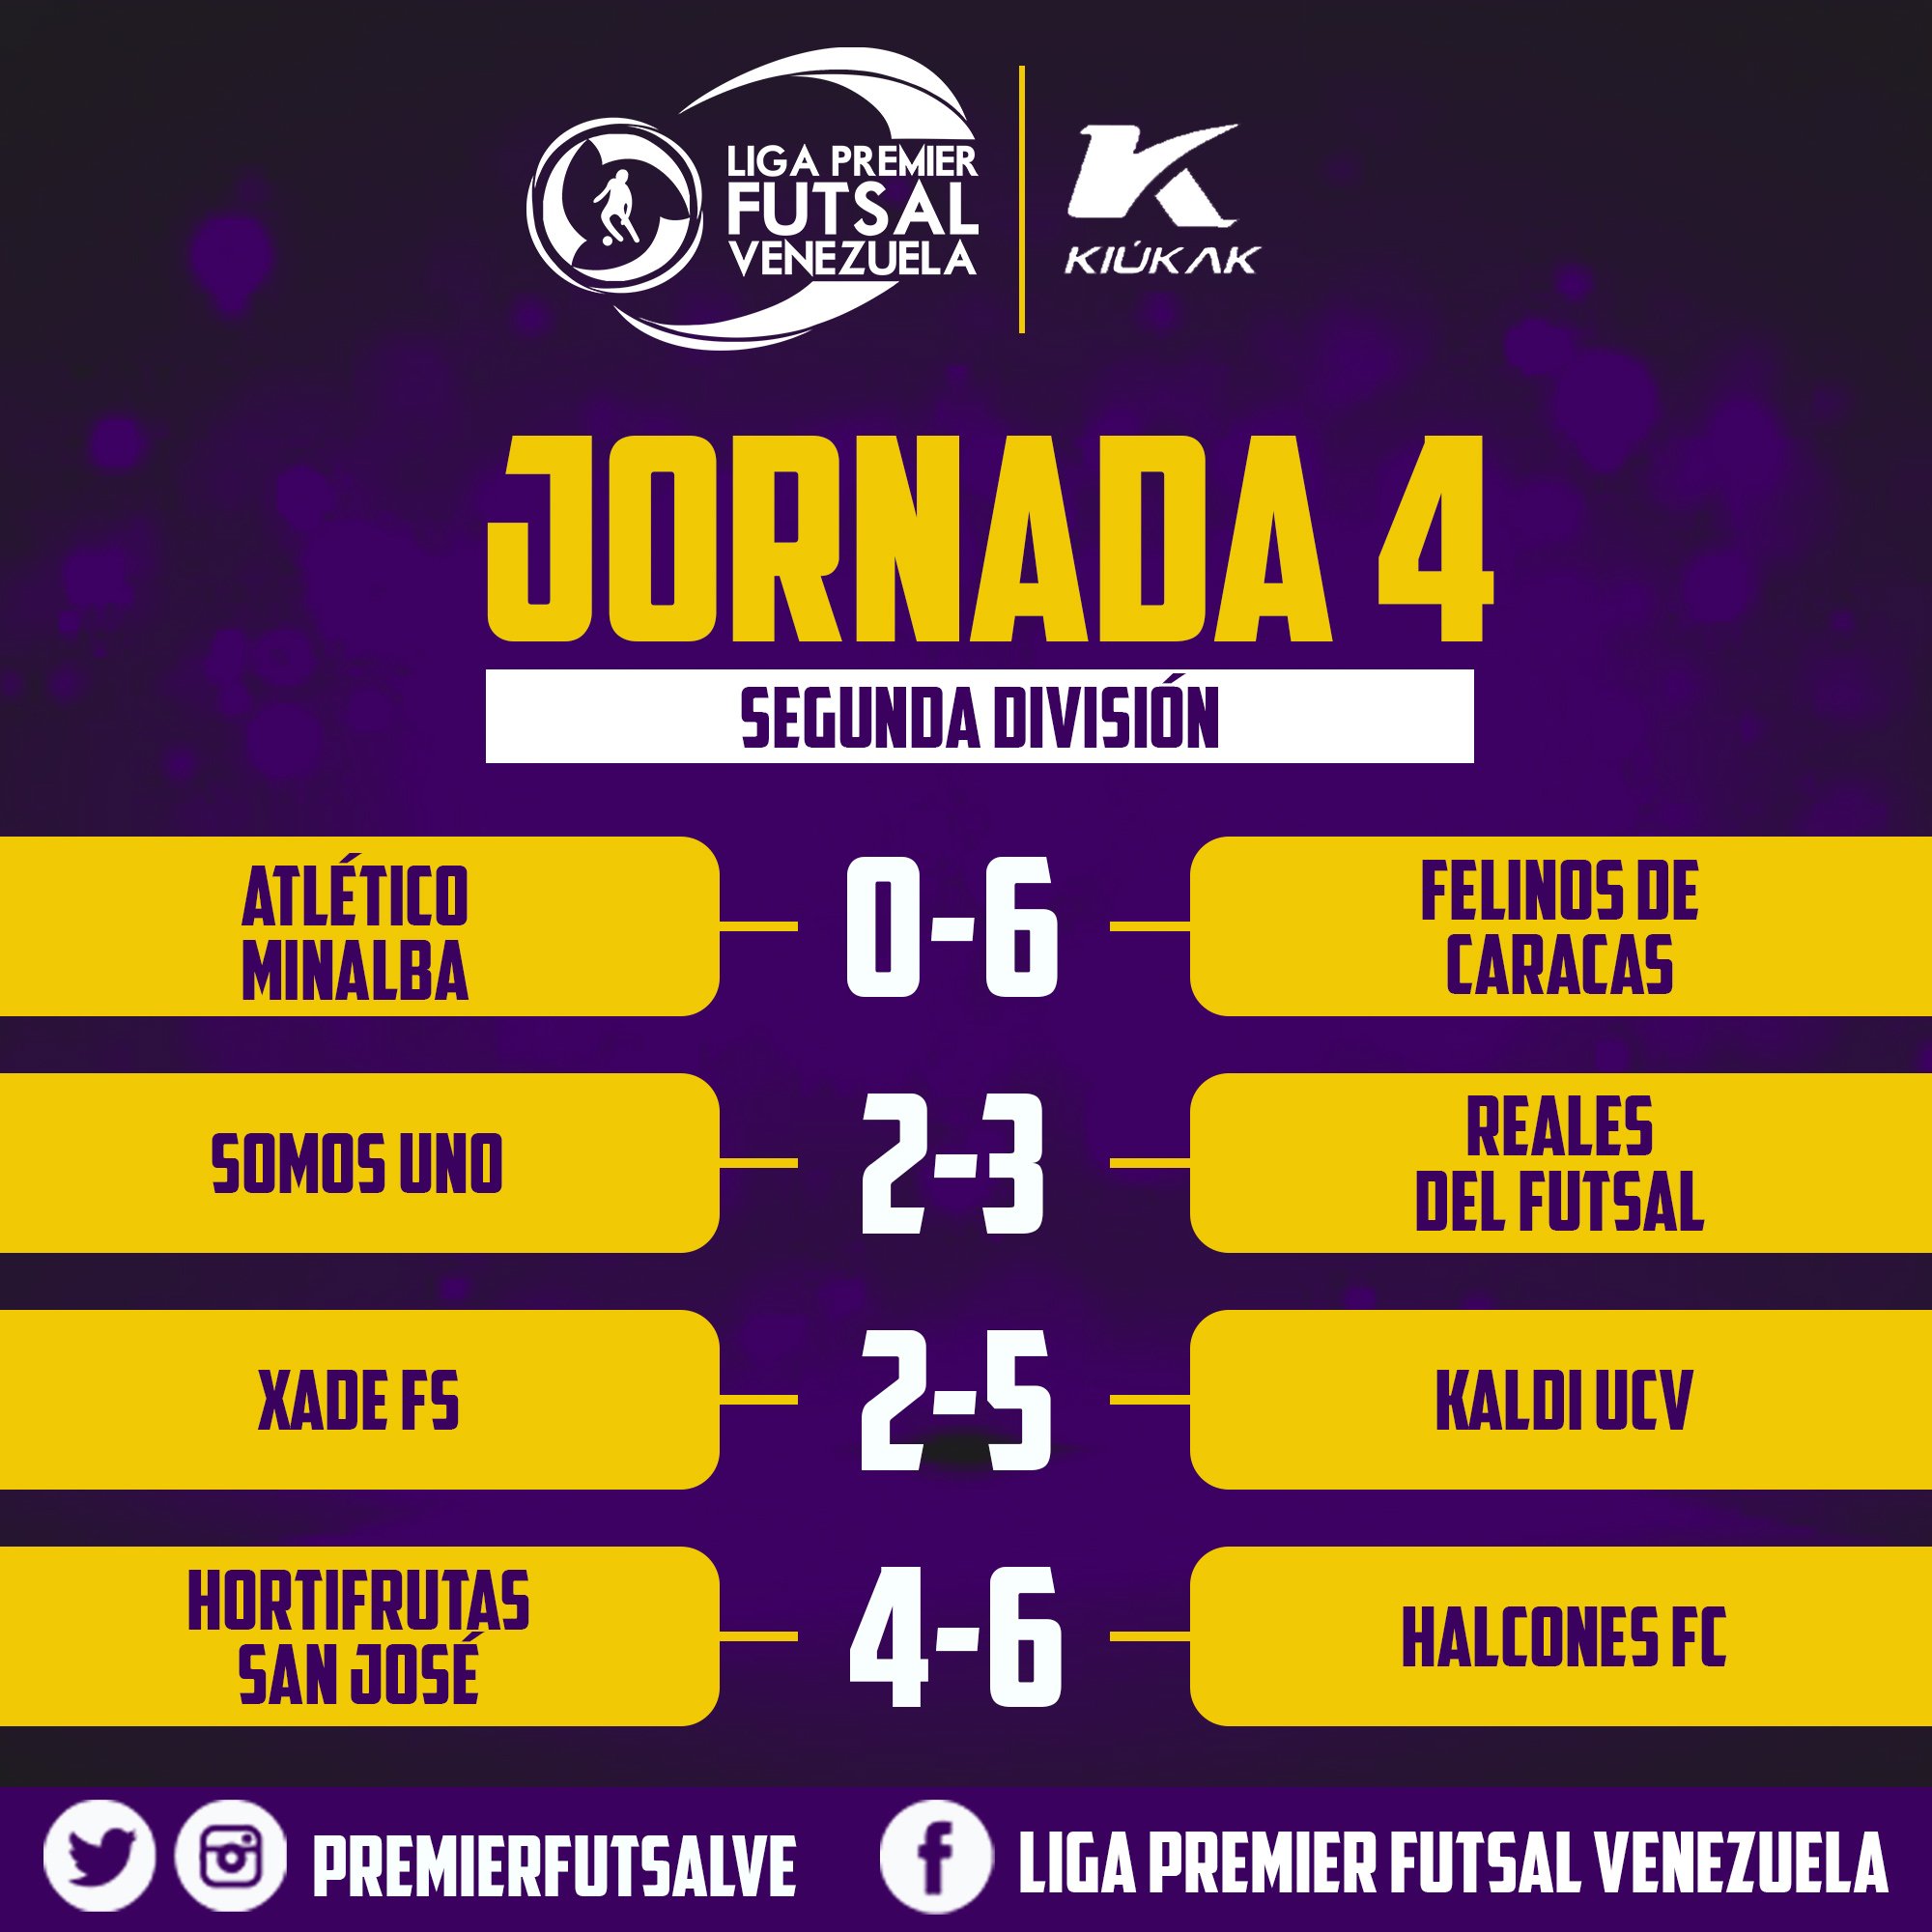 Twitter \ Liga Premier Futsal. على تويتر: "📊⚽ Así quedaron los resultados de una nueva jornada en la Segunda División. 🔝💪 Felinos de Caracas, Reales Futsal, Kaldi UCV y Halcones FC